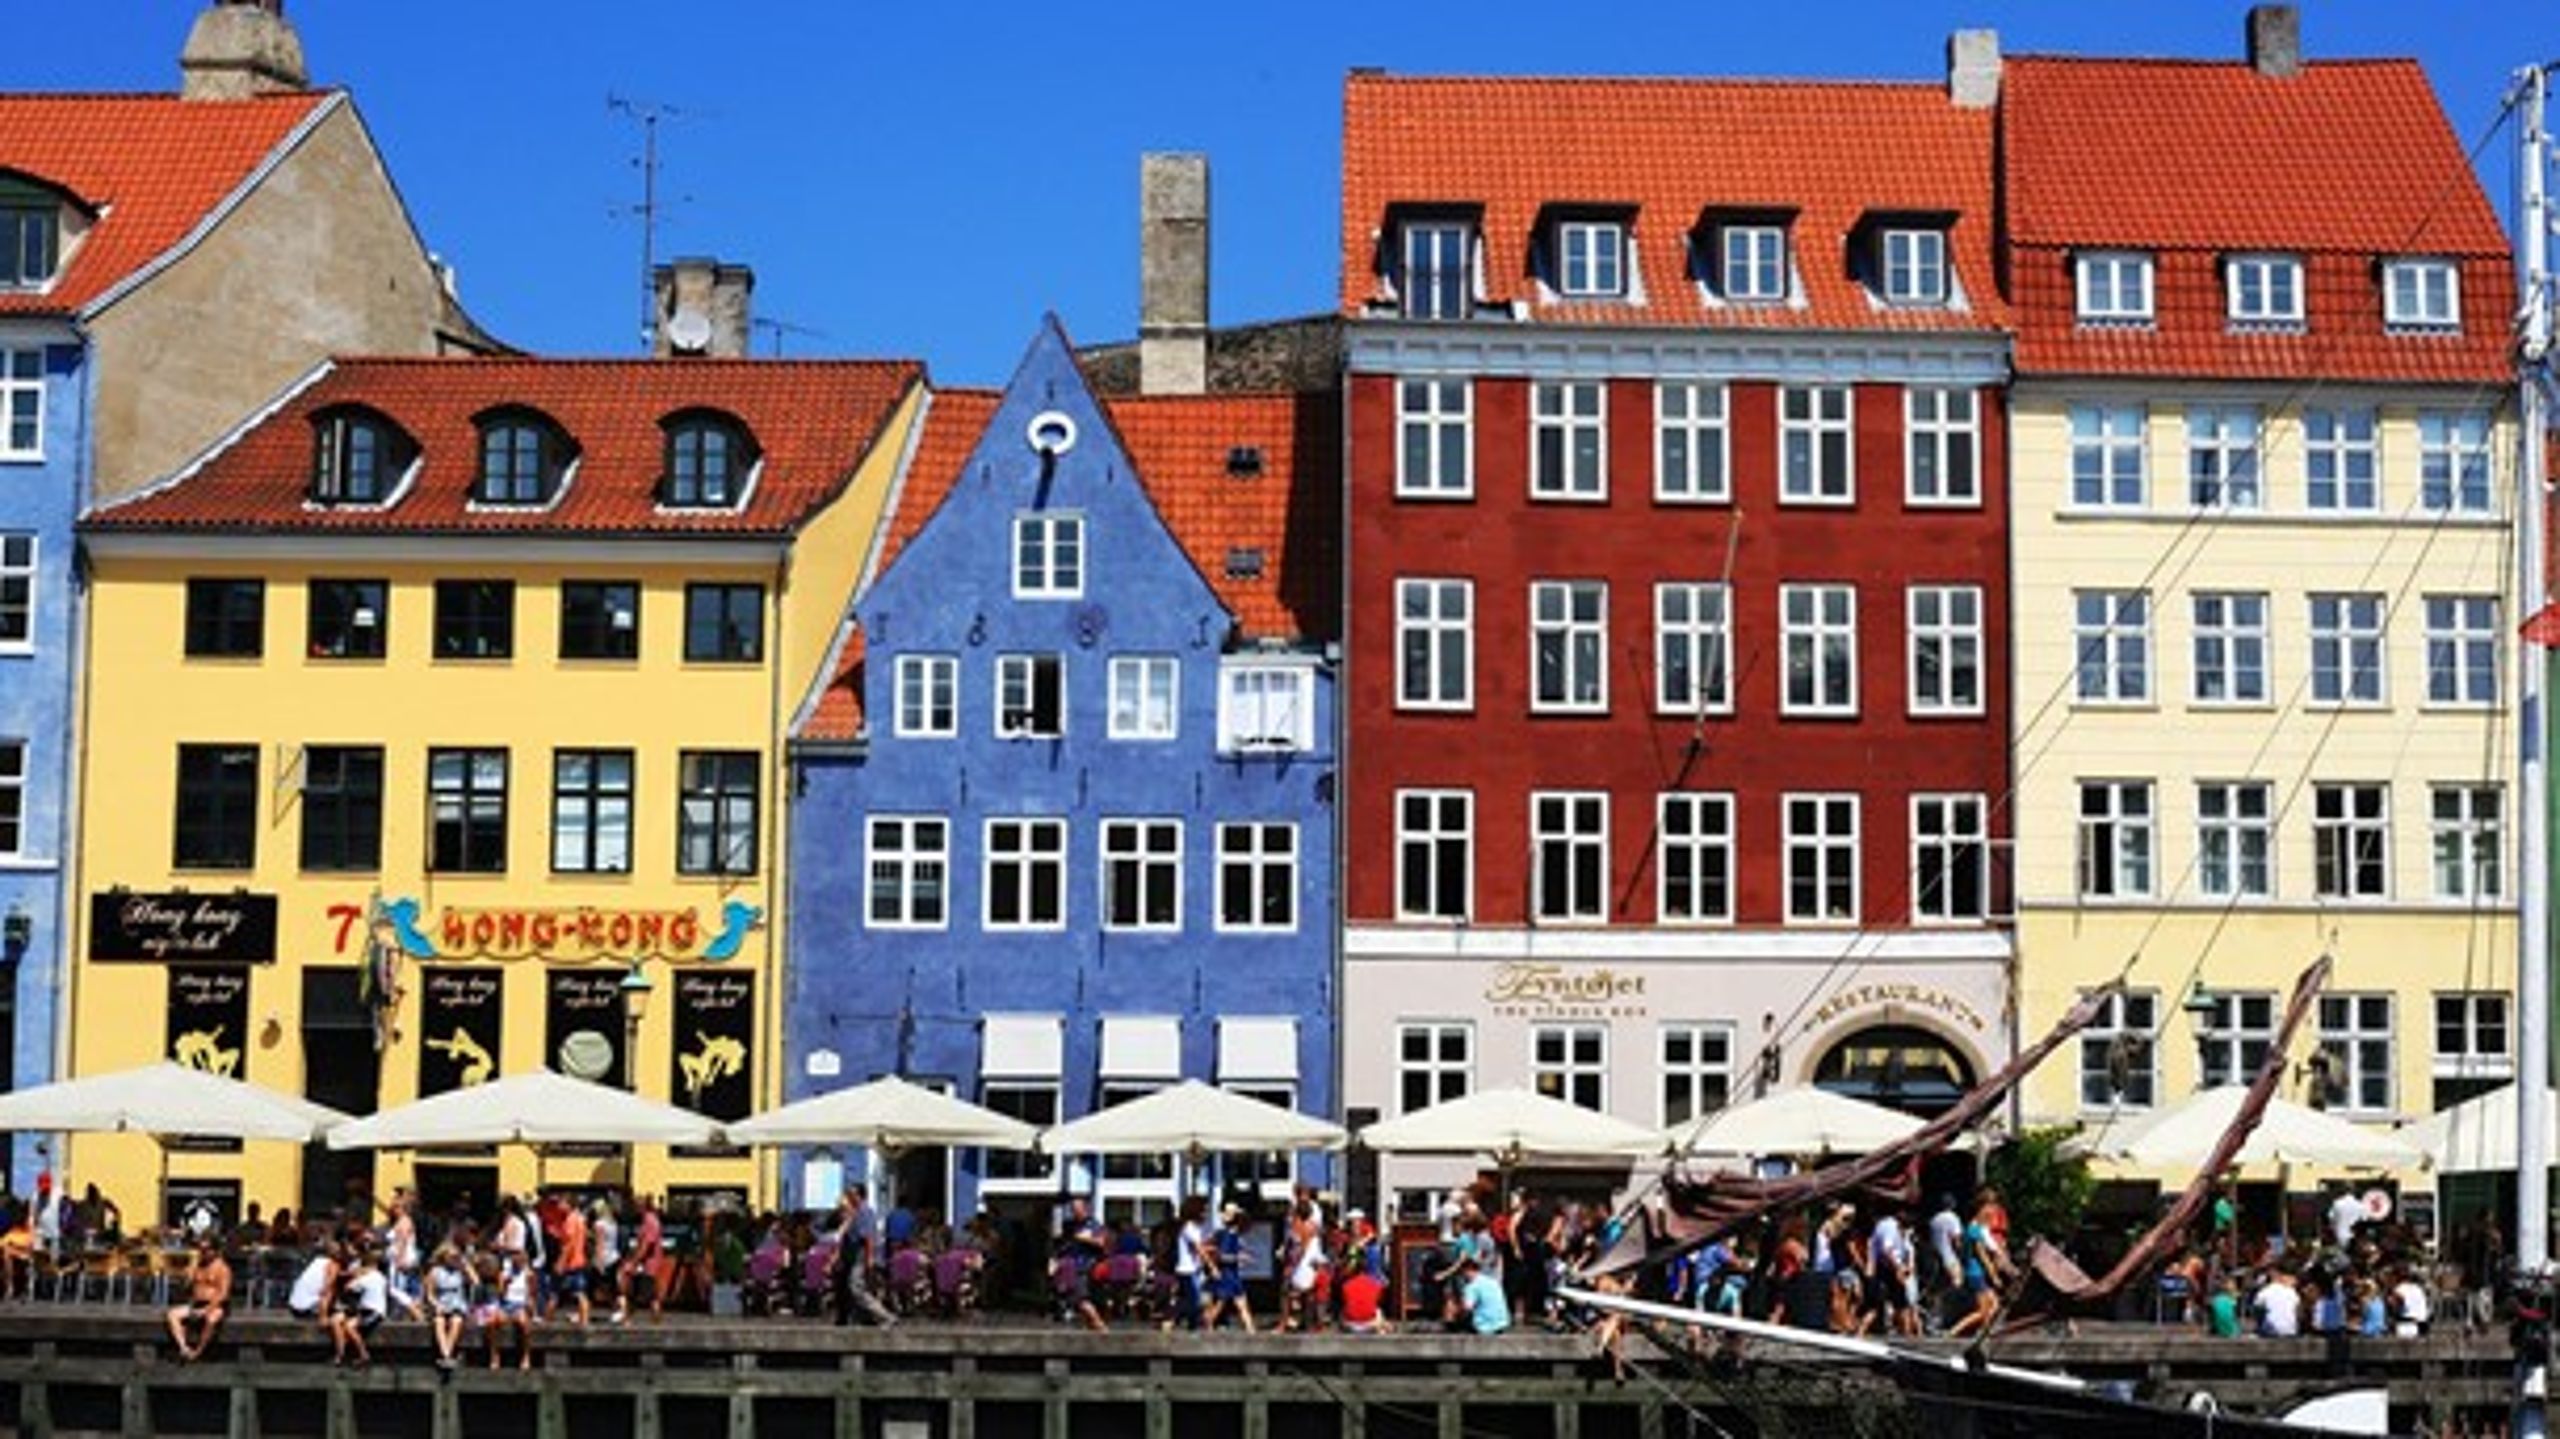 För flera danska myndigheter går flyttlasset från Köpenhamn ut i landet. Det medför problem.